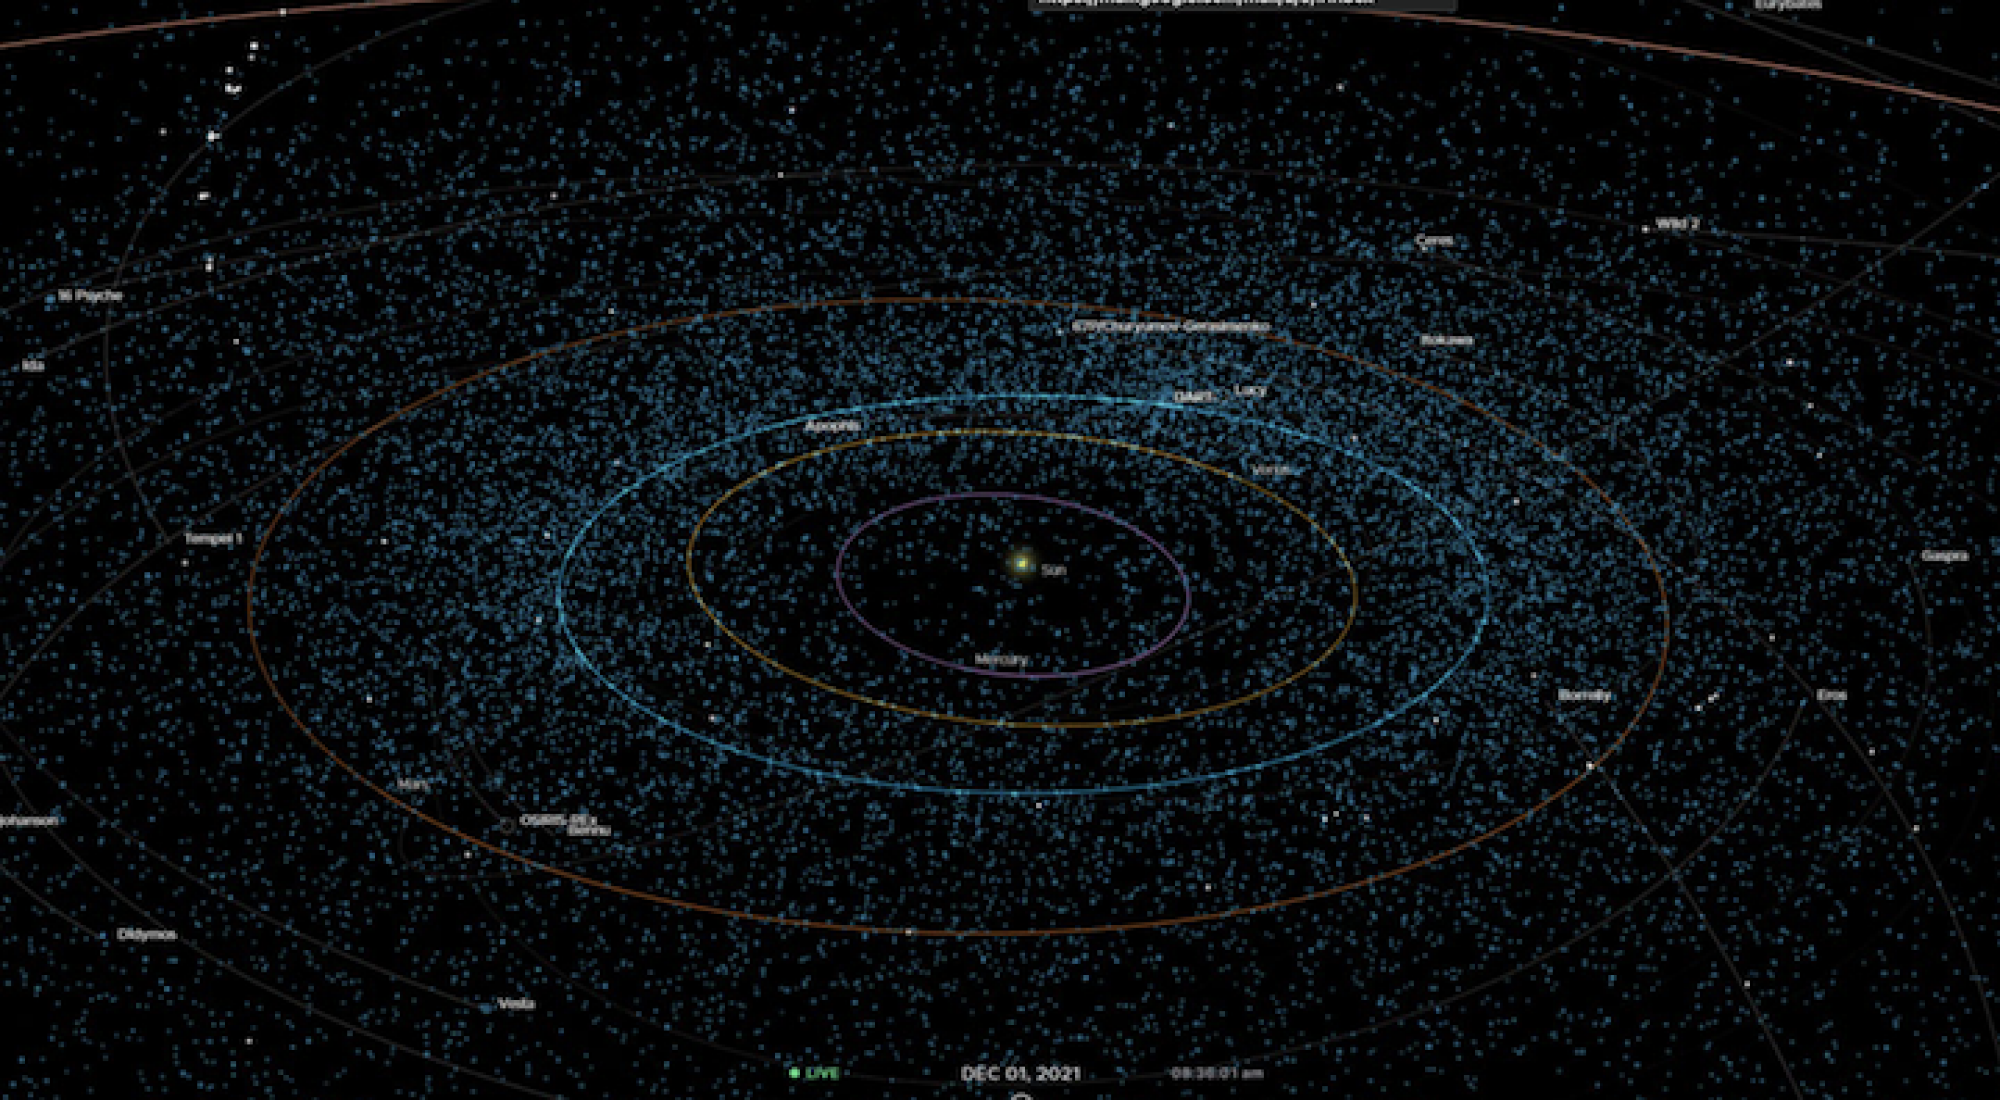 Une visualisation montrant des centaines d'astéroïdes proches de la Terre dans notre système solaire (points bleus).  L'orbite de la Terre autour du soleil est également représentée en bleu.